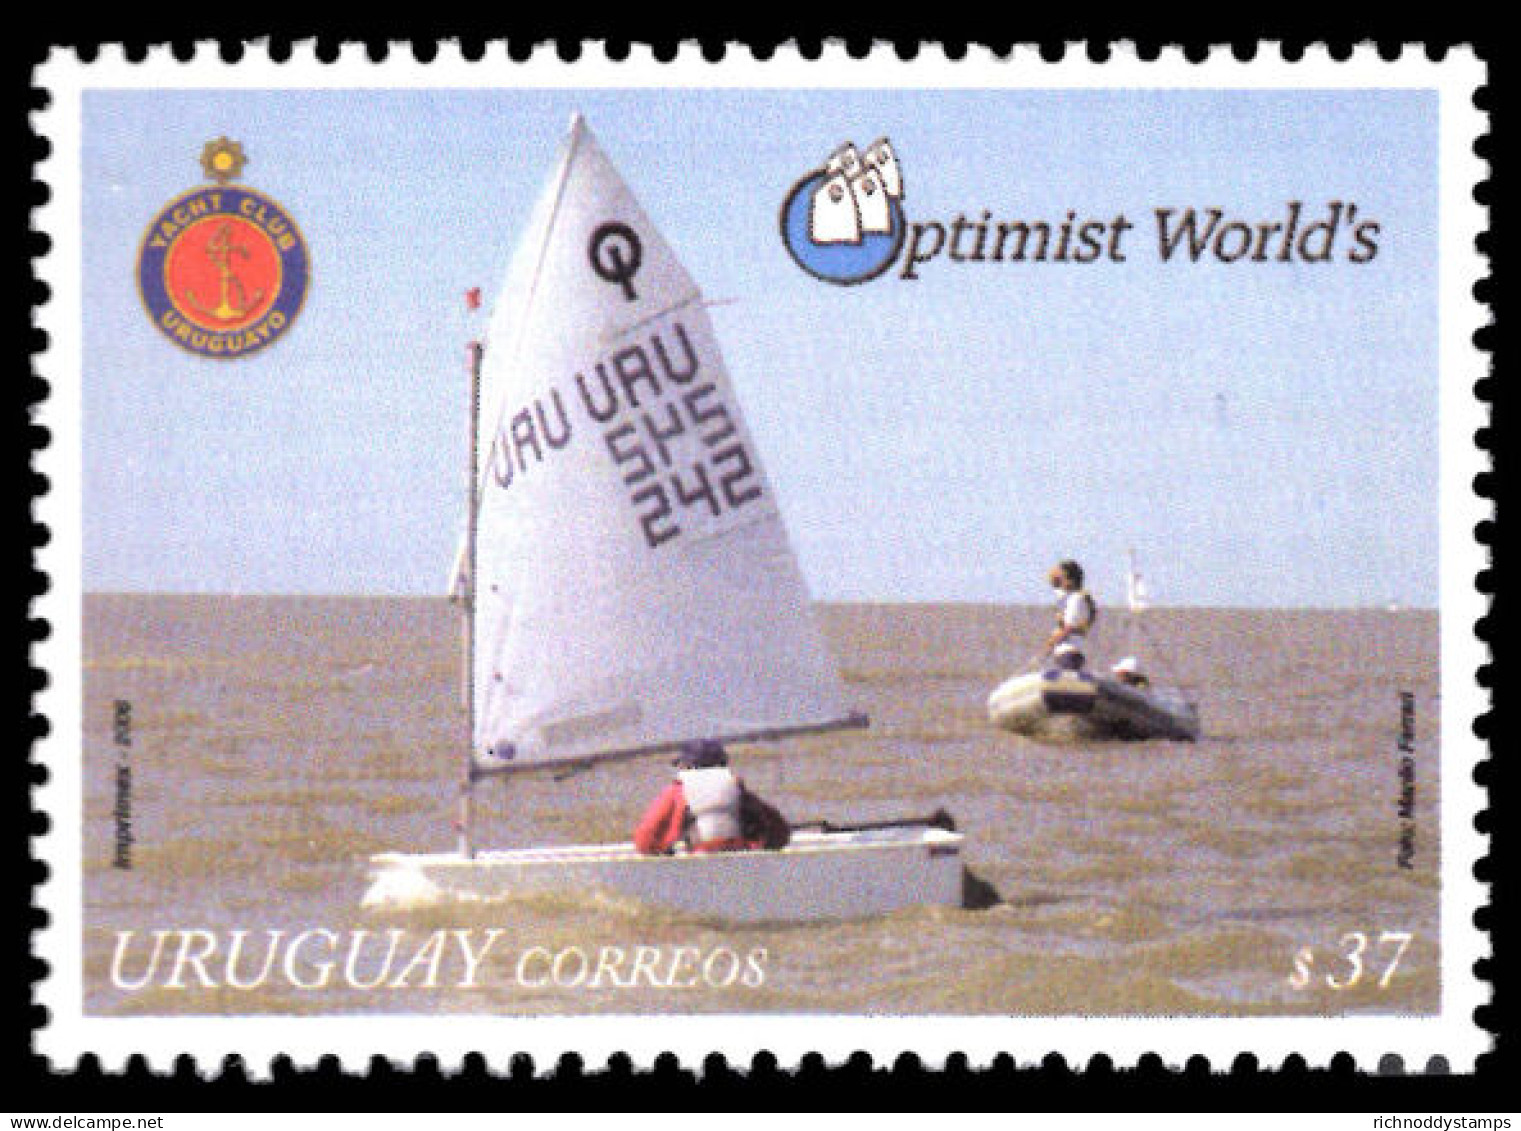 Uruguay 2006 Optimist World's 2006 Unmounted Mint. - Uruguay